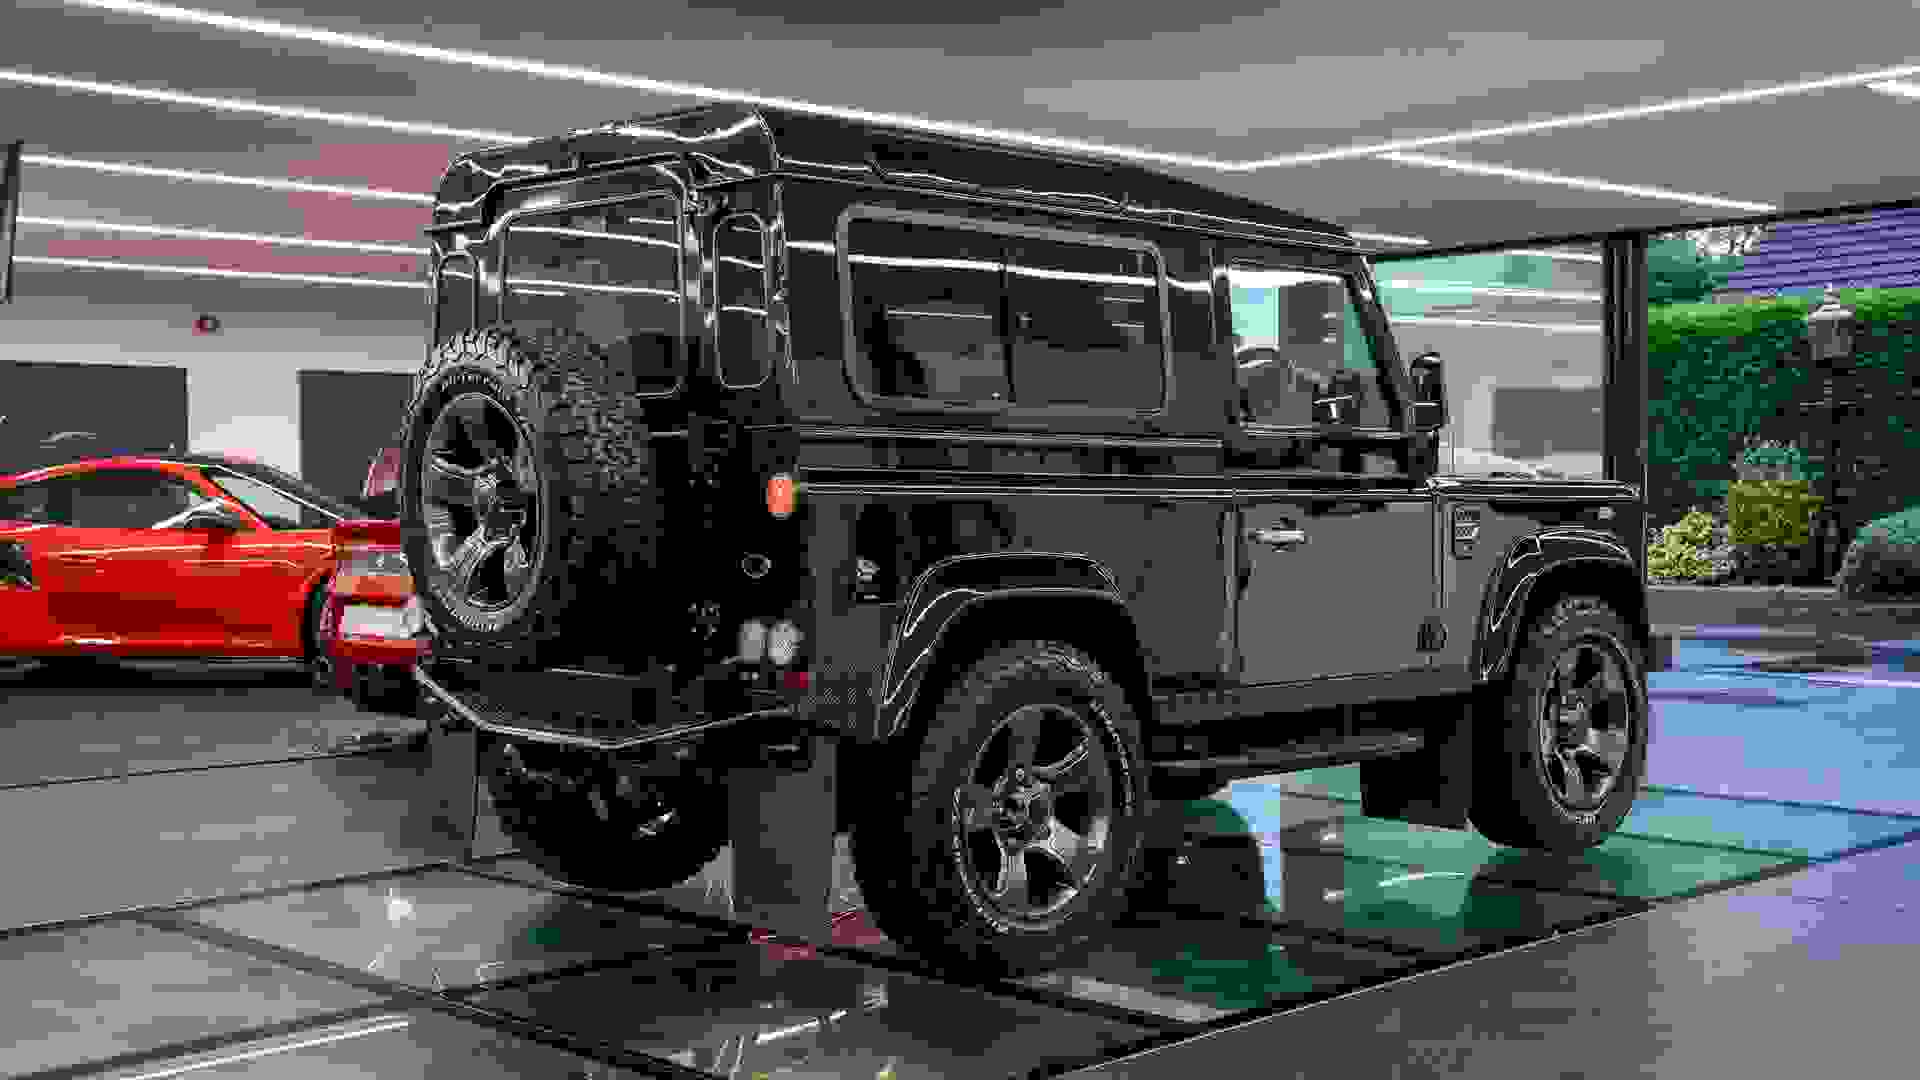 Land Rover Defender 90 Photo 1ef4b8a1-1f9c-4018-83f3-6a94d98de4e9.jpg